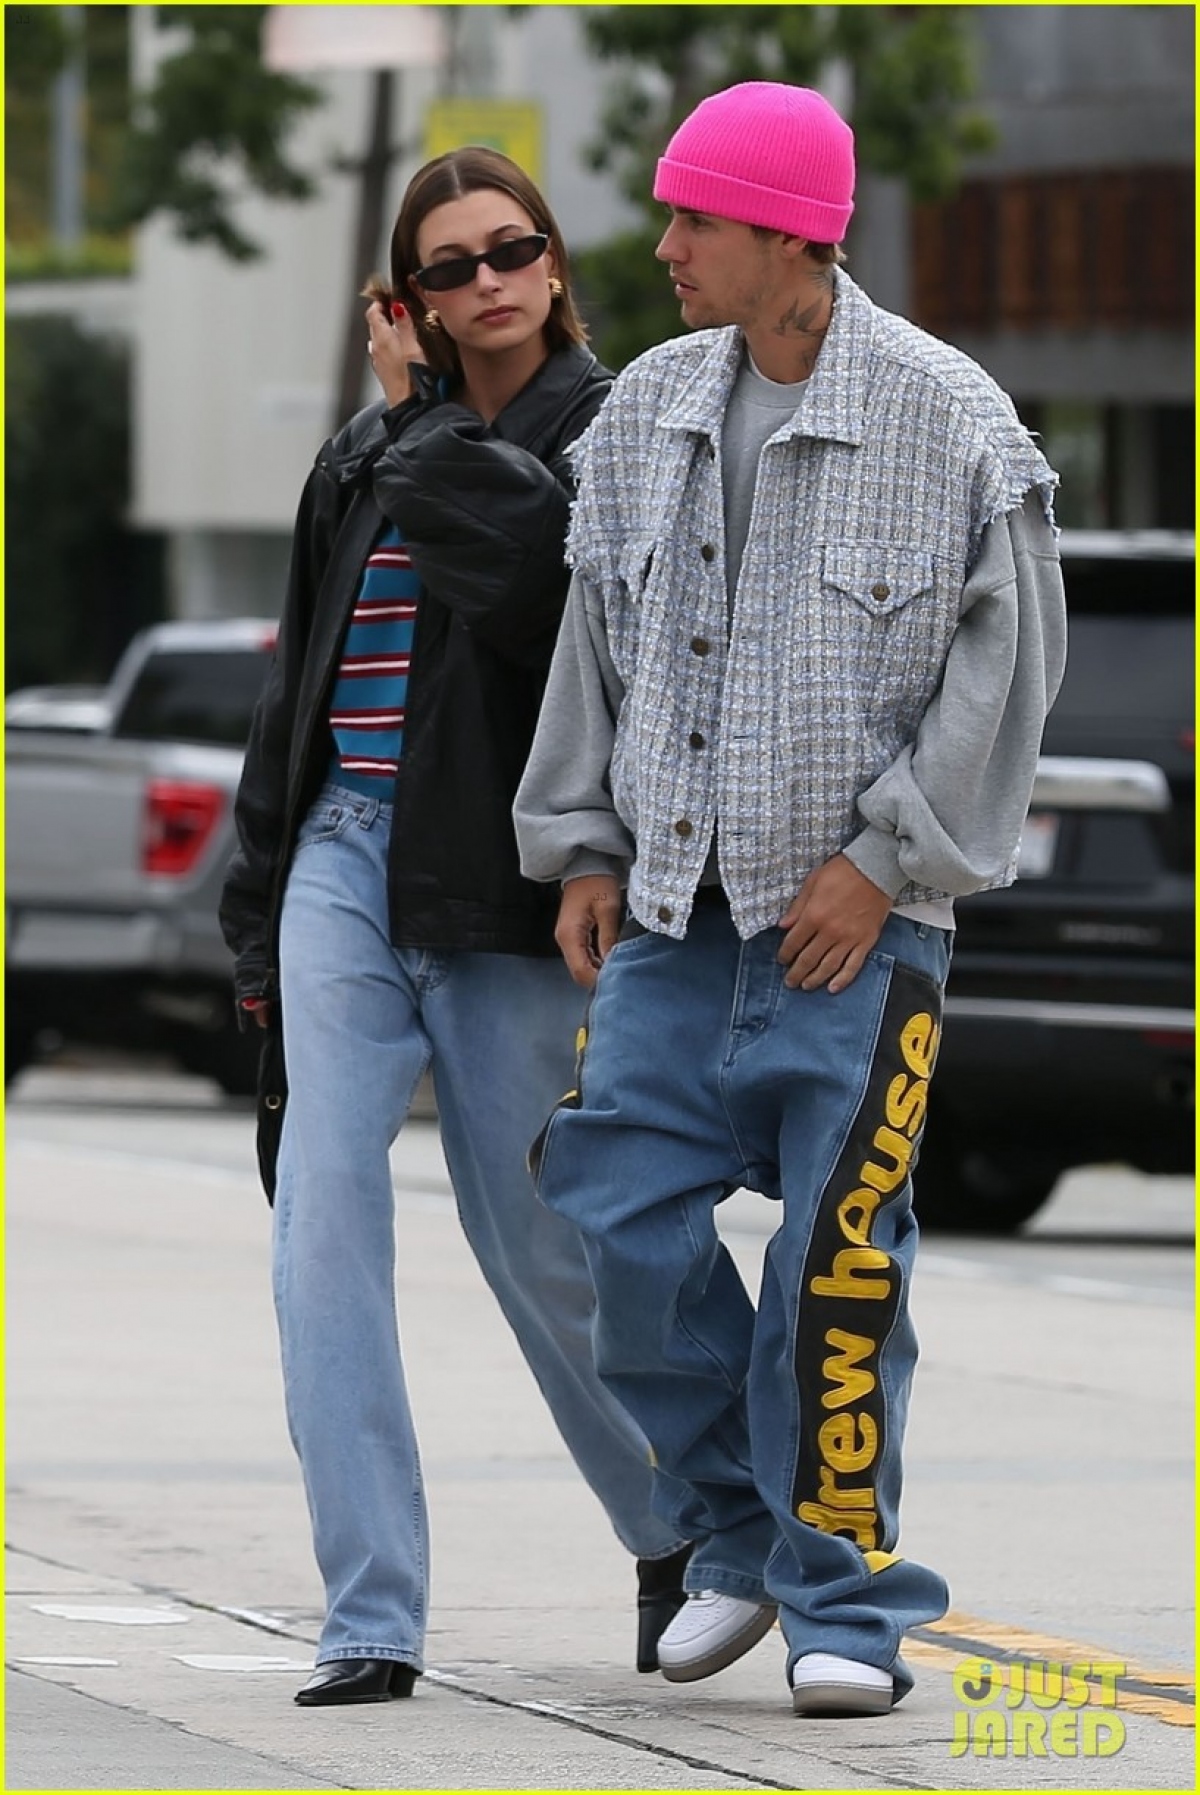 Vợ Justin Bieber sành điệu đi dạo phố cùng chồng sau tin đồn bắt nạt Selena Gomez - Ảnh 6.